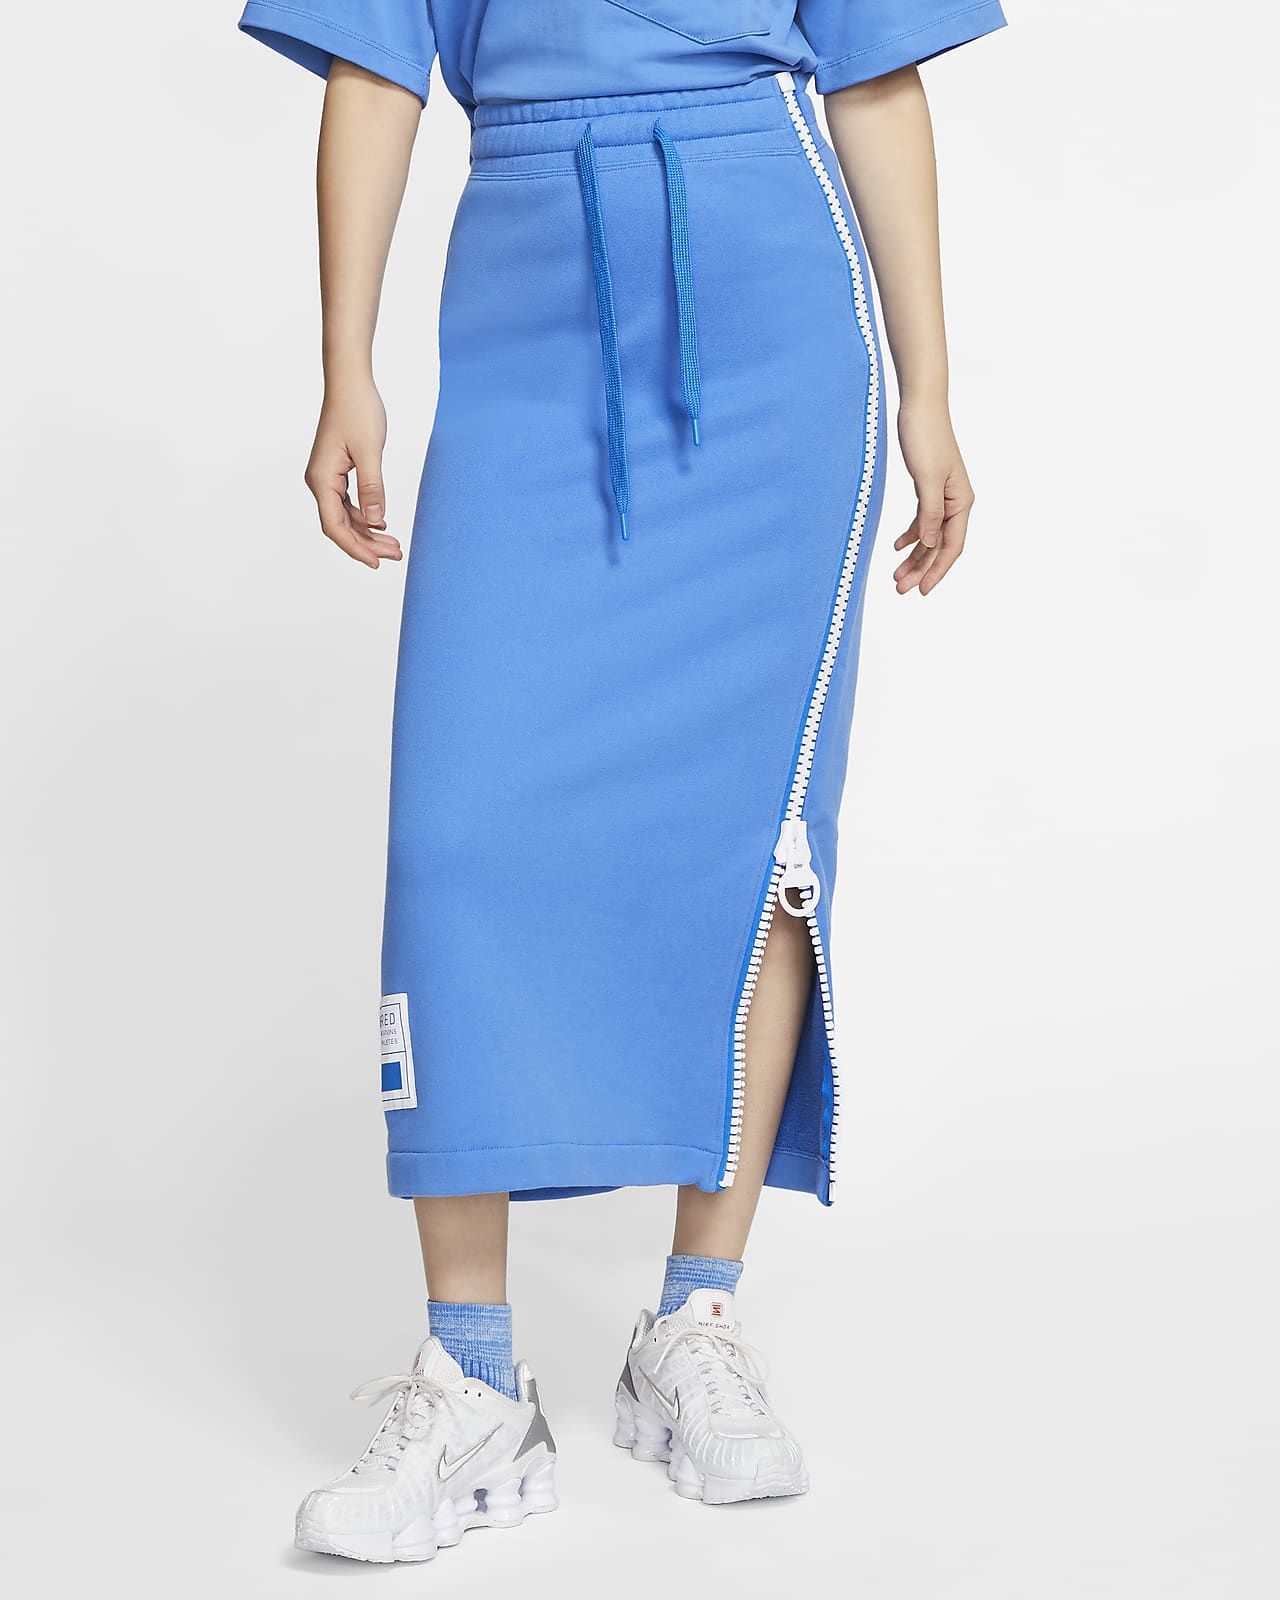 Nike Sportswear NSW 女款 Fleece 短裙